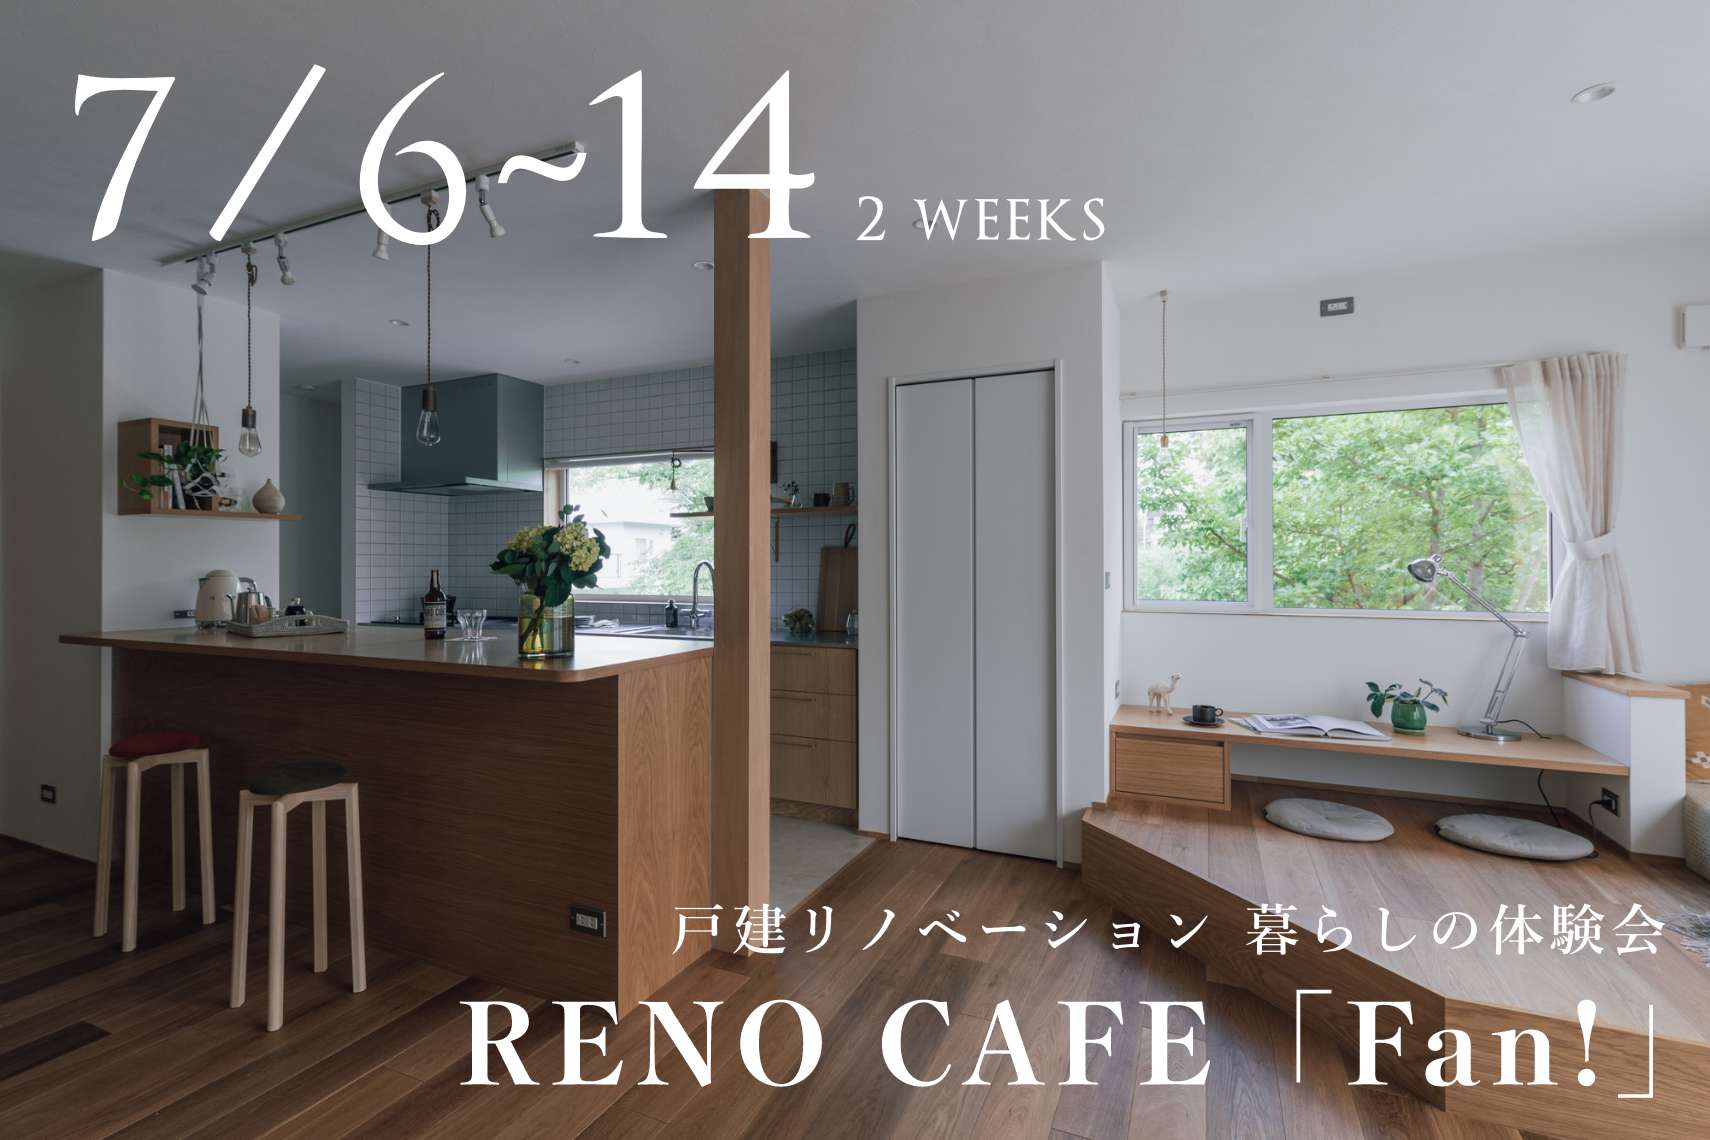 RENO CAFE「Fan!」（戸建リノベ 暮らしの体験会）札幌市手稲区